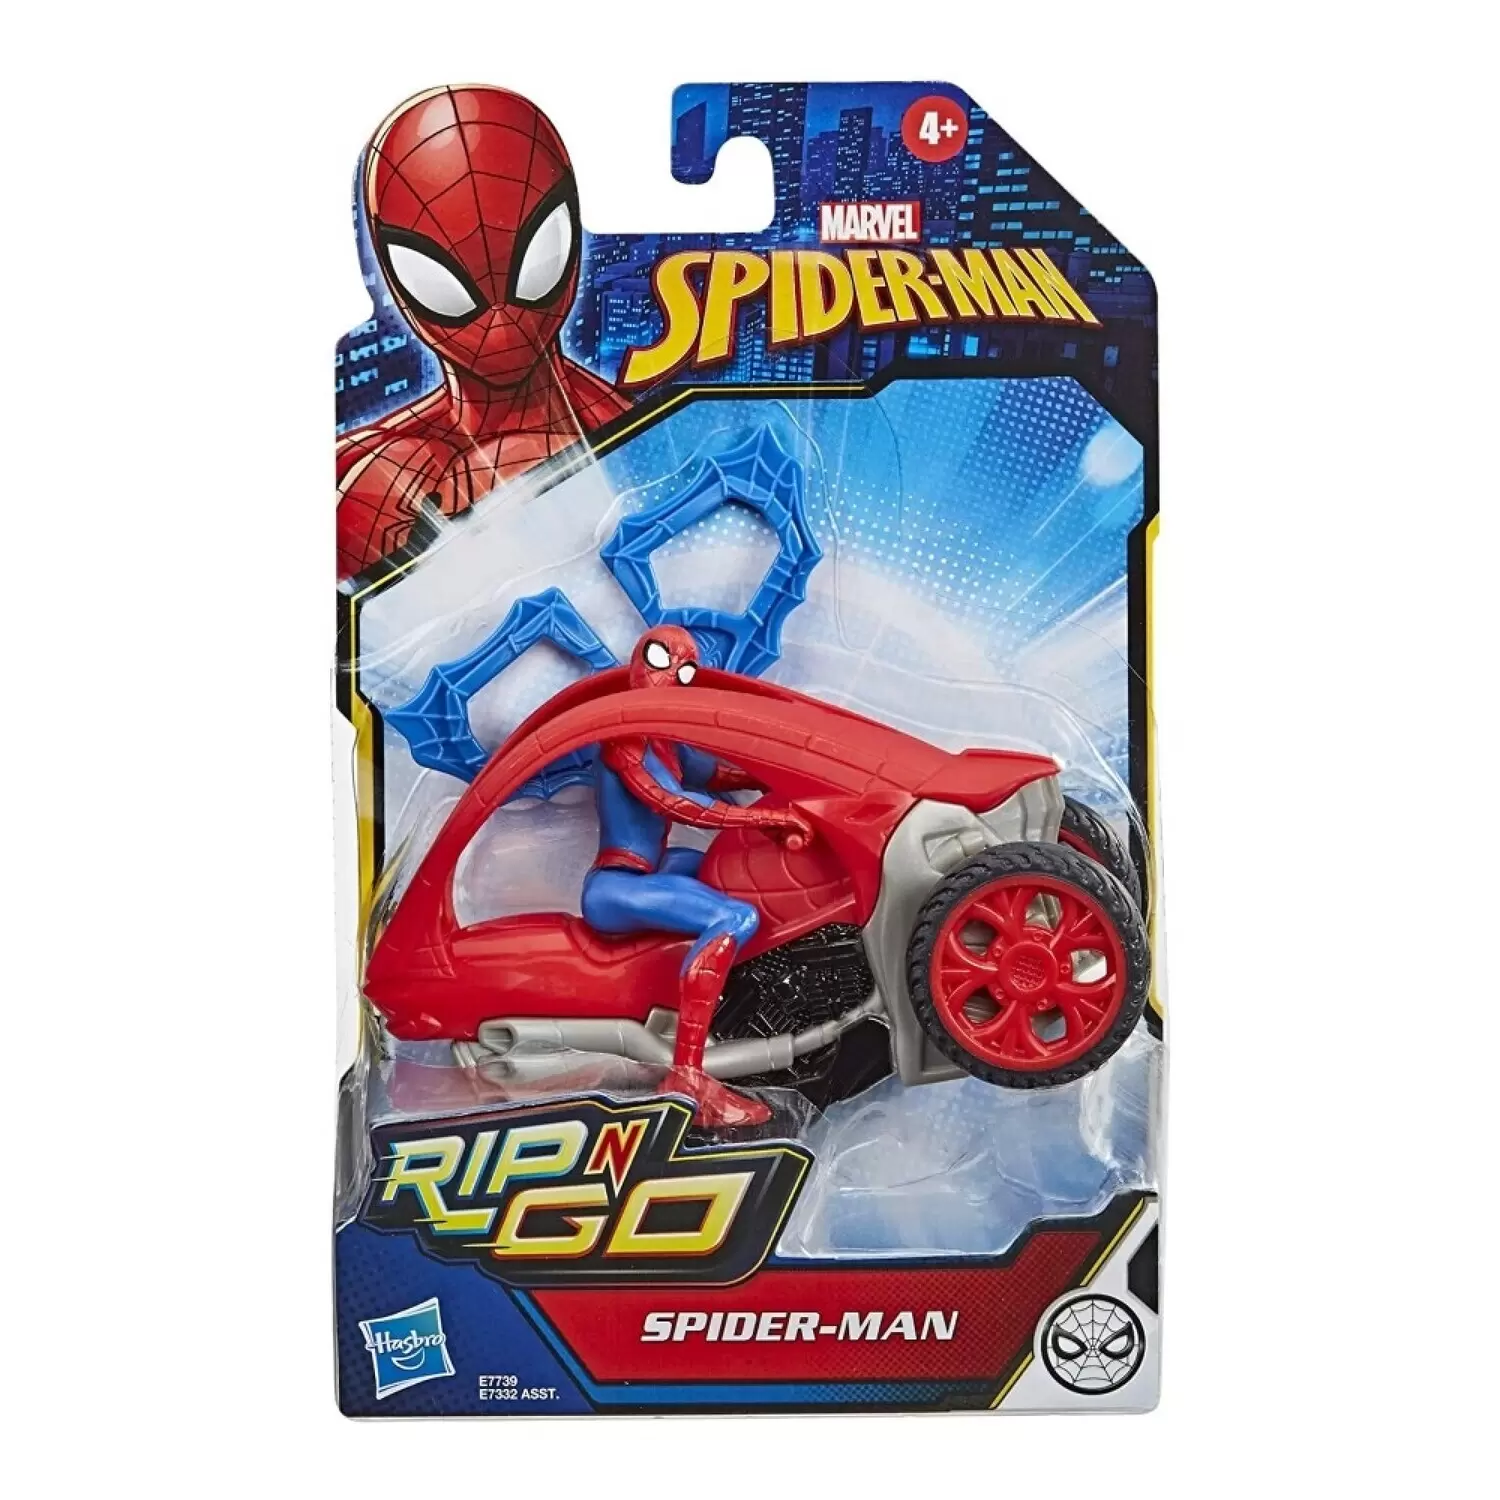 Spider-Man - Spider-Man Stunt Vehicle